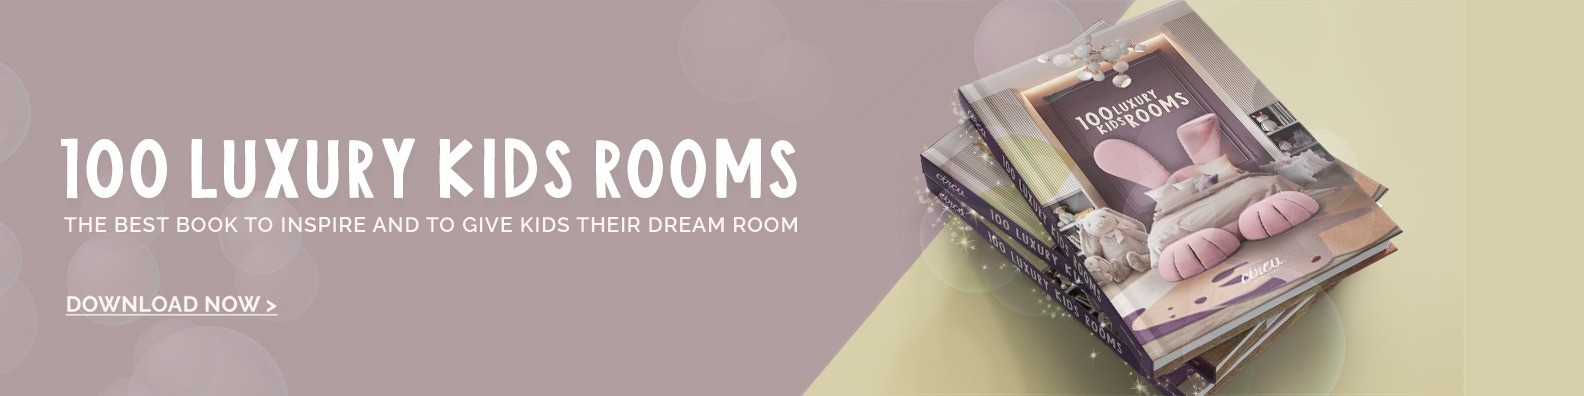 100 Luxury Kids Rooms eBook